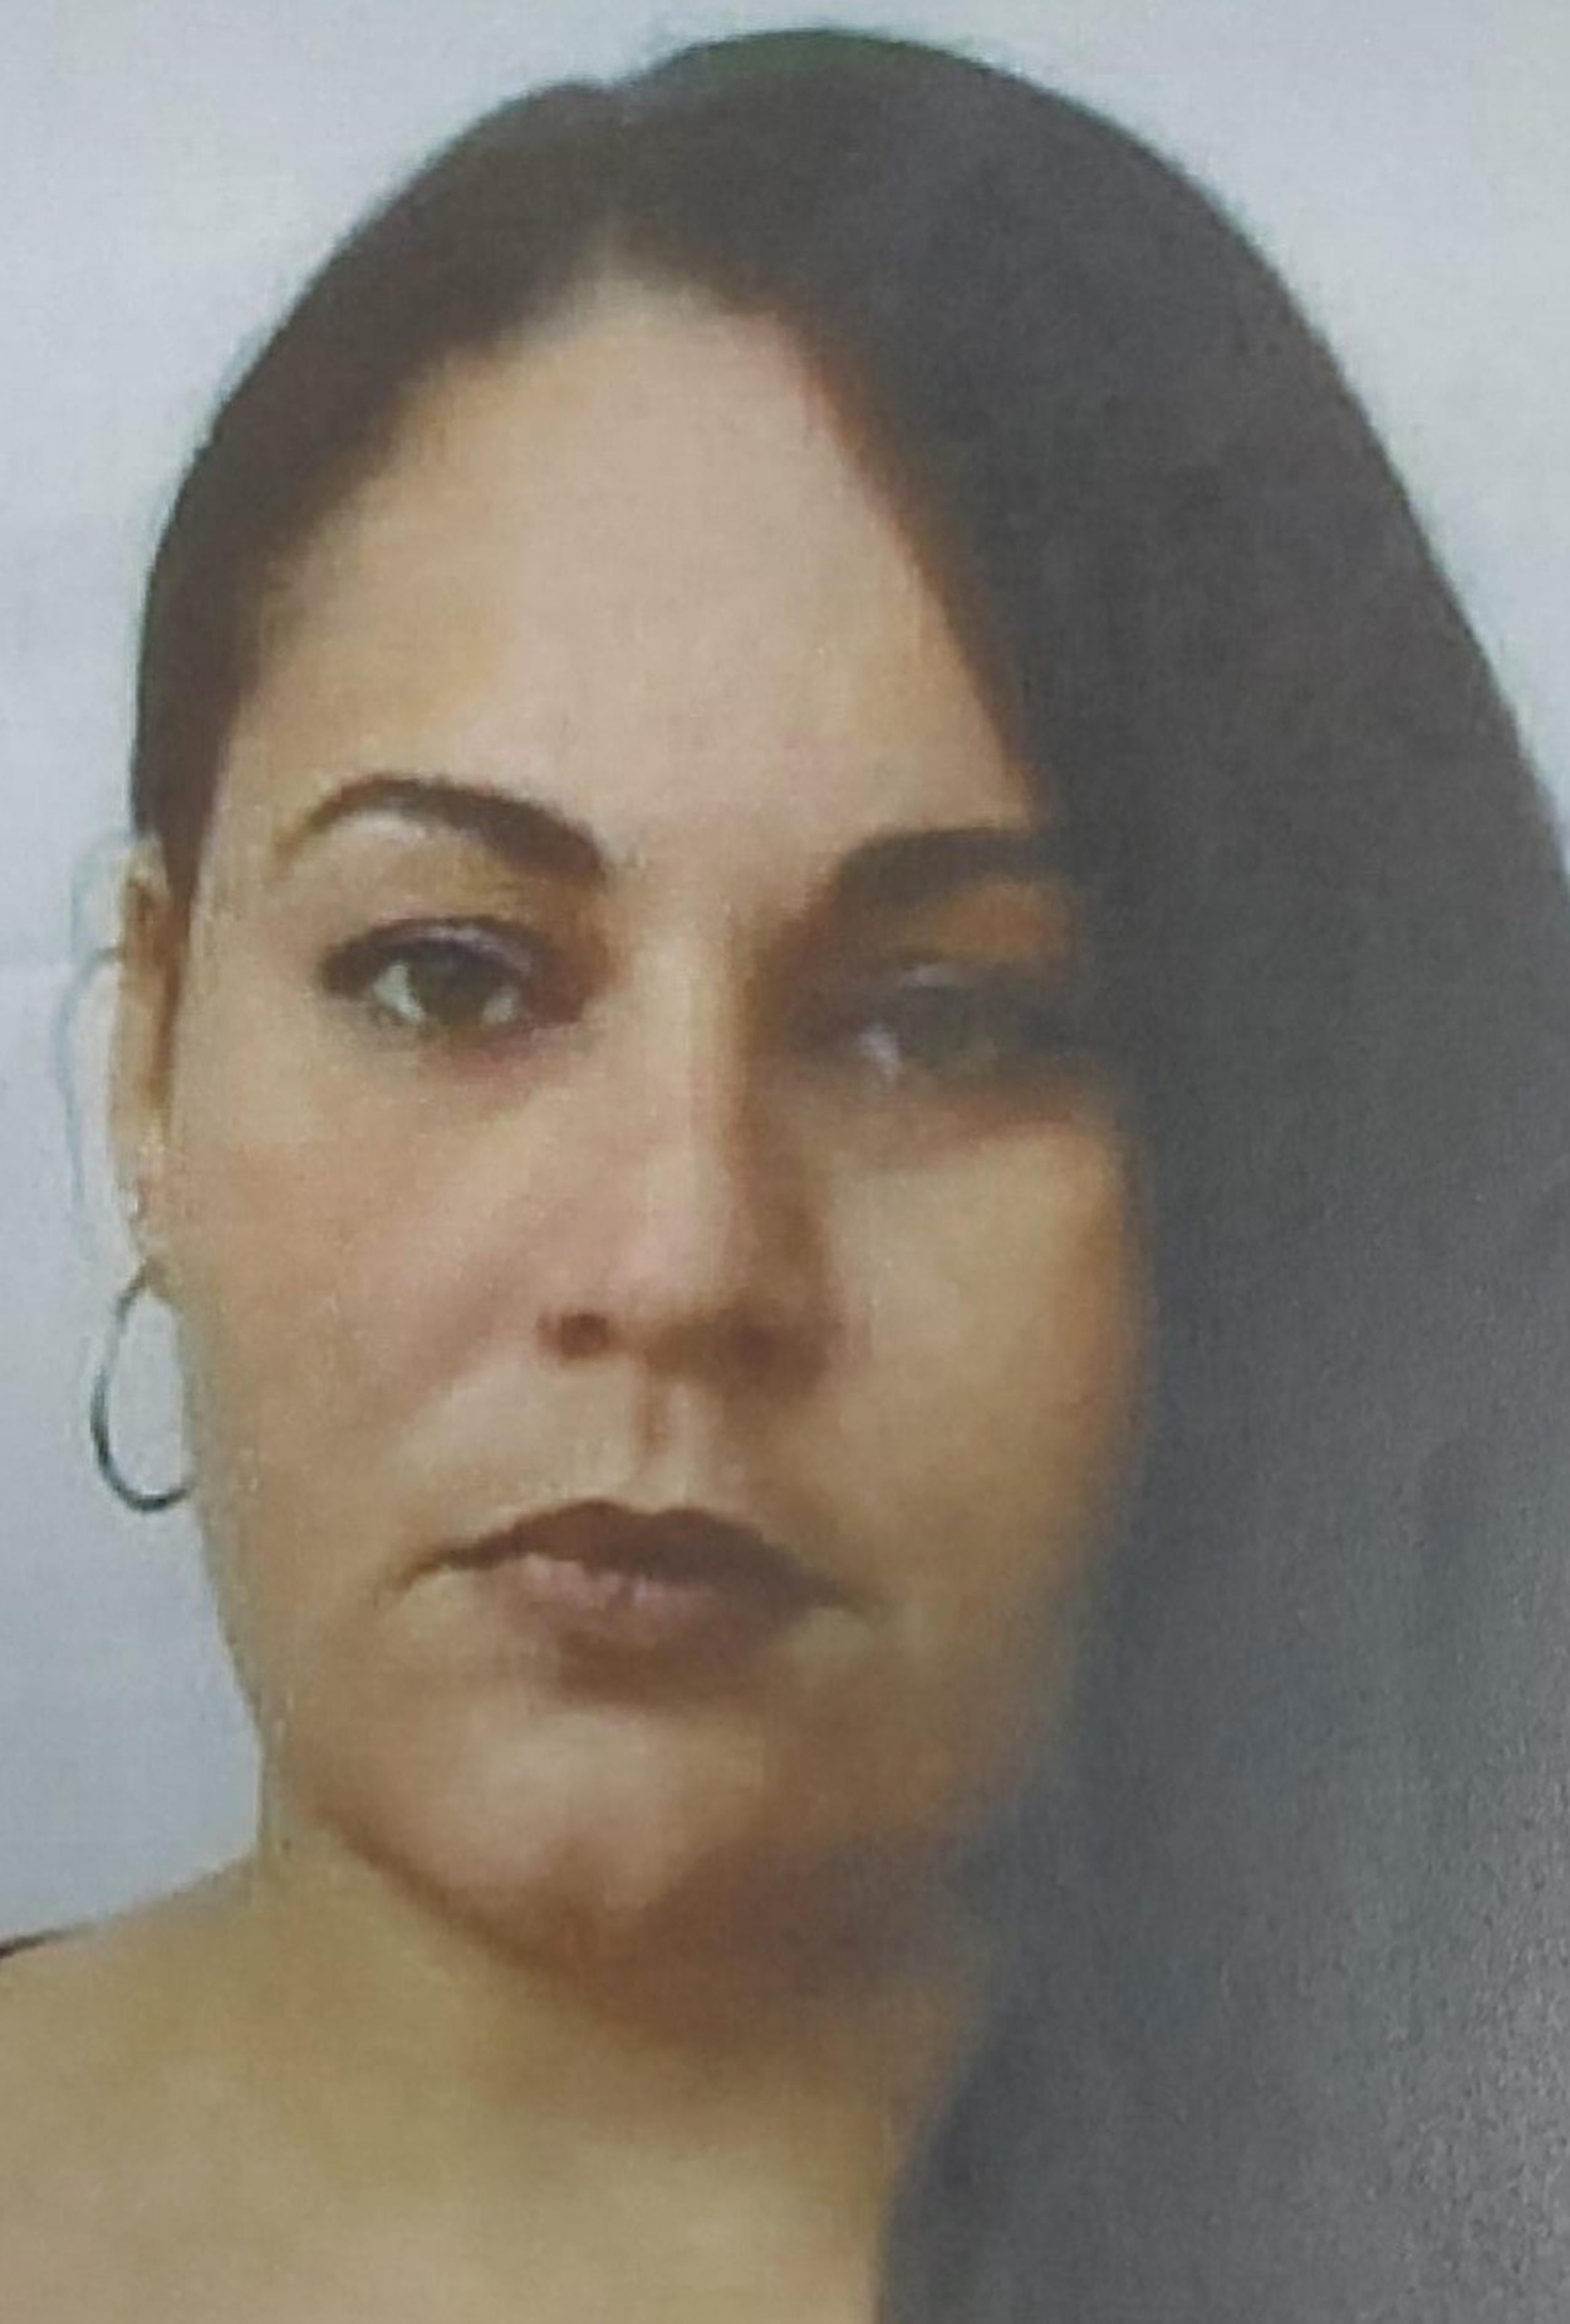 Ana M. Velázquez Arroyo fue acusada en ausencia por delitos de apropiación ilegal y maltrato a personas de edad avanzada. Si la ha visto llame a la línea confidencial del Negociado de la Policía al (787) 343-2020.